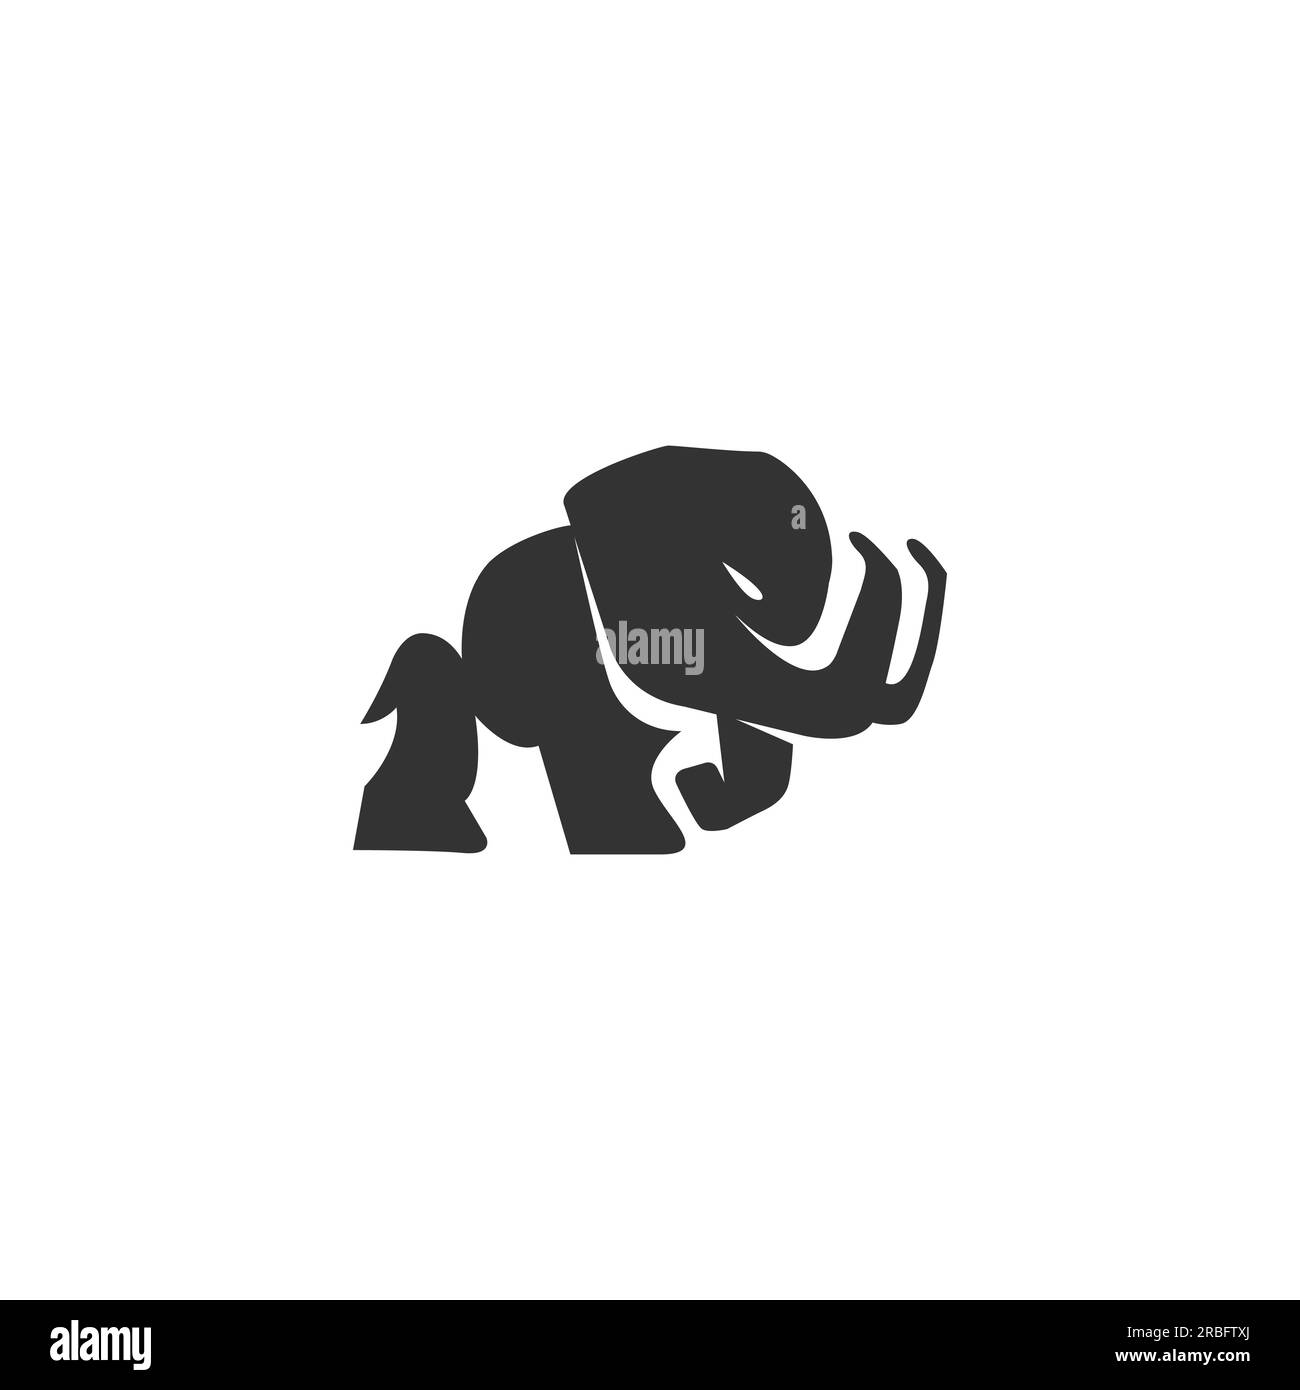 Logo mammoth per la vostra azienda, logo semplice e pulito.EPS 10 Illustrazione Vettoriale